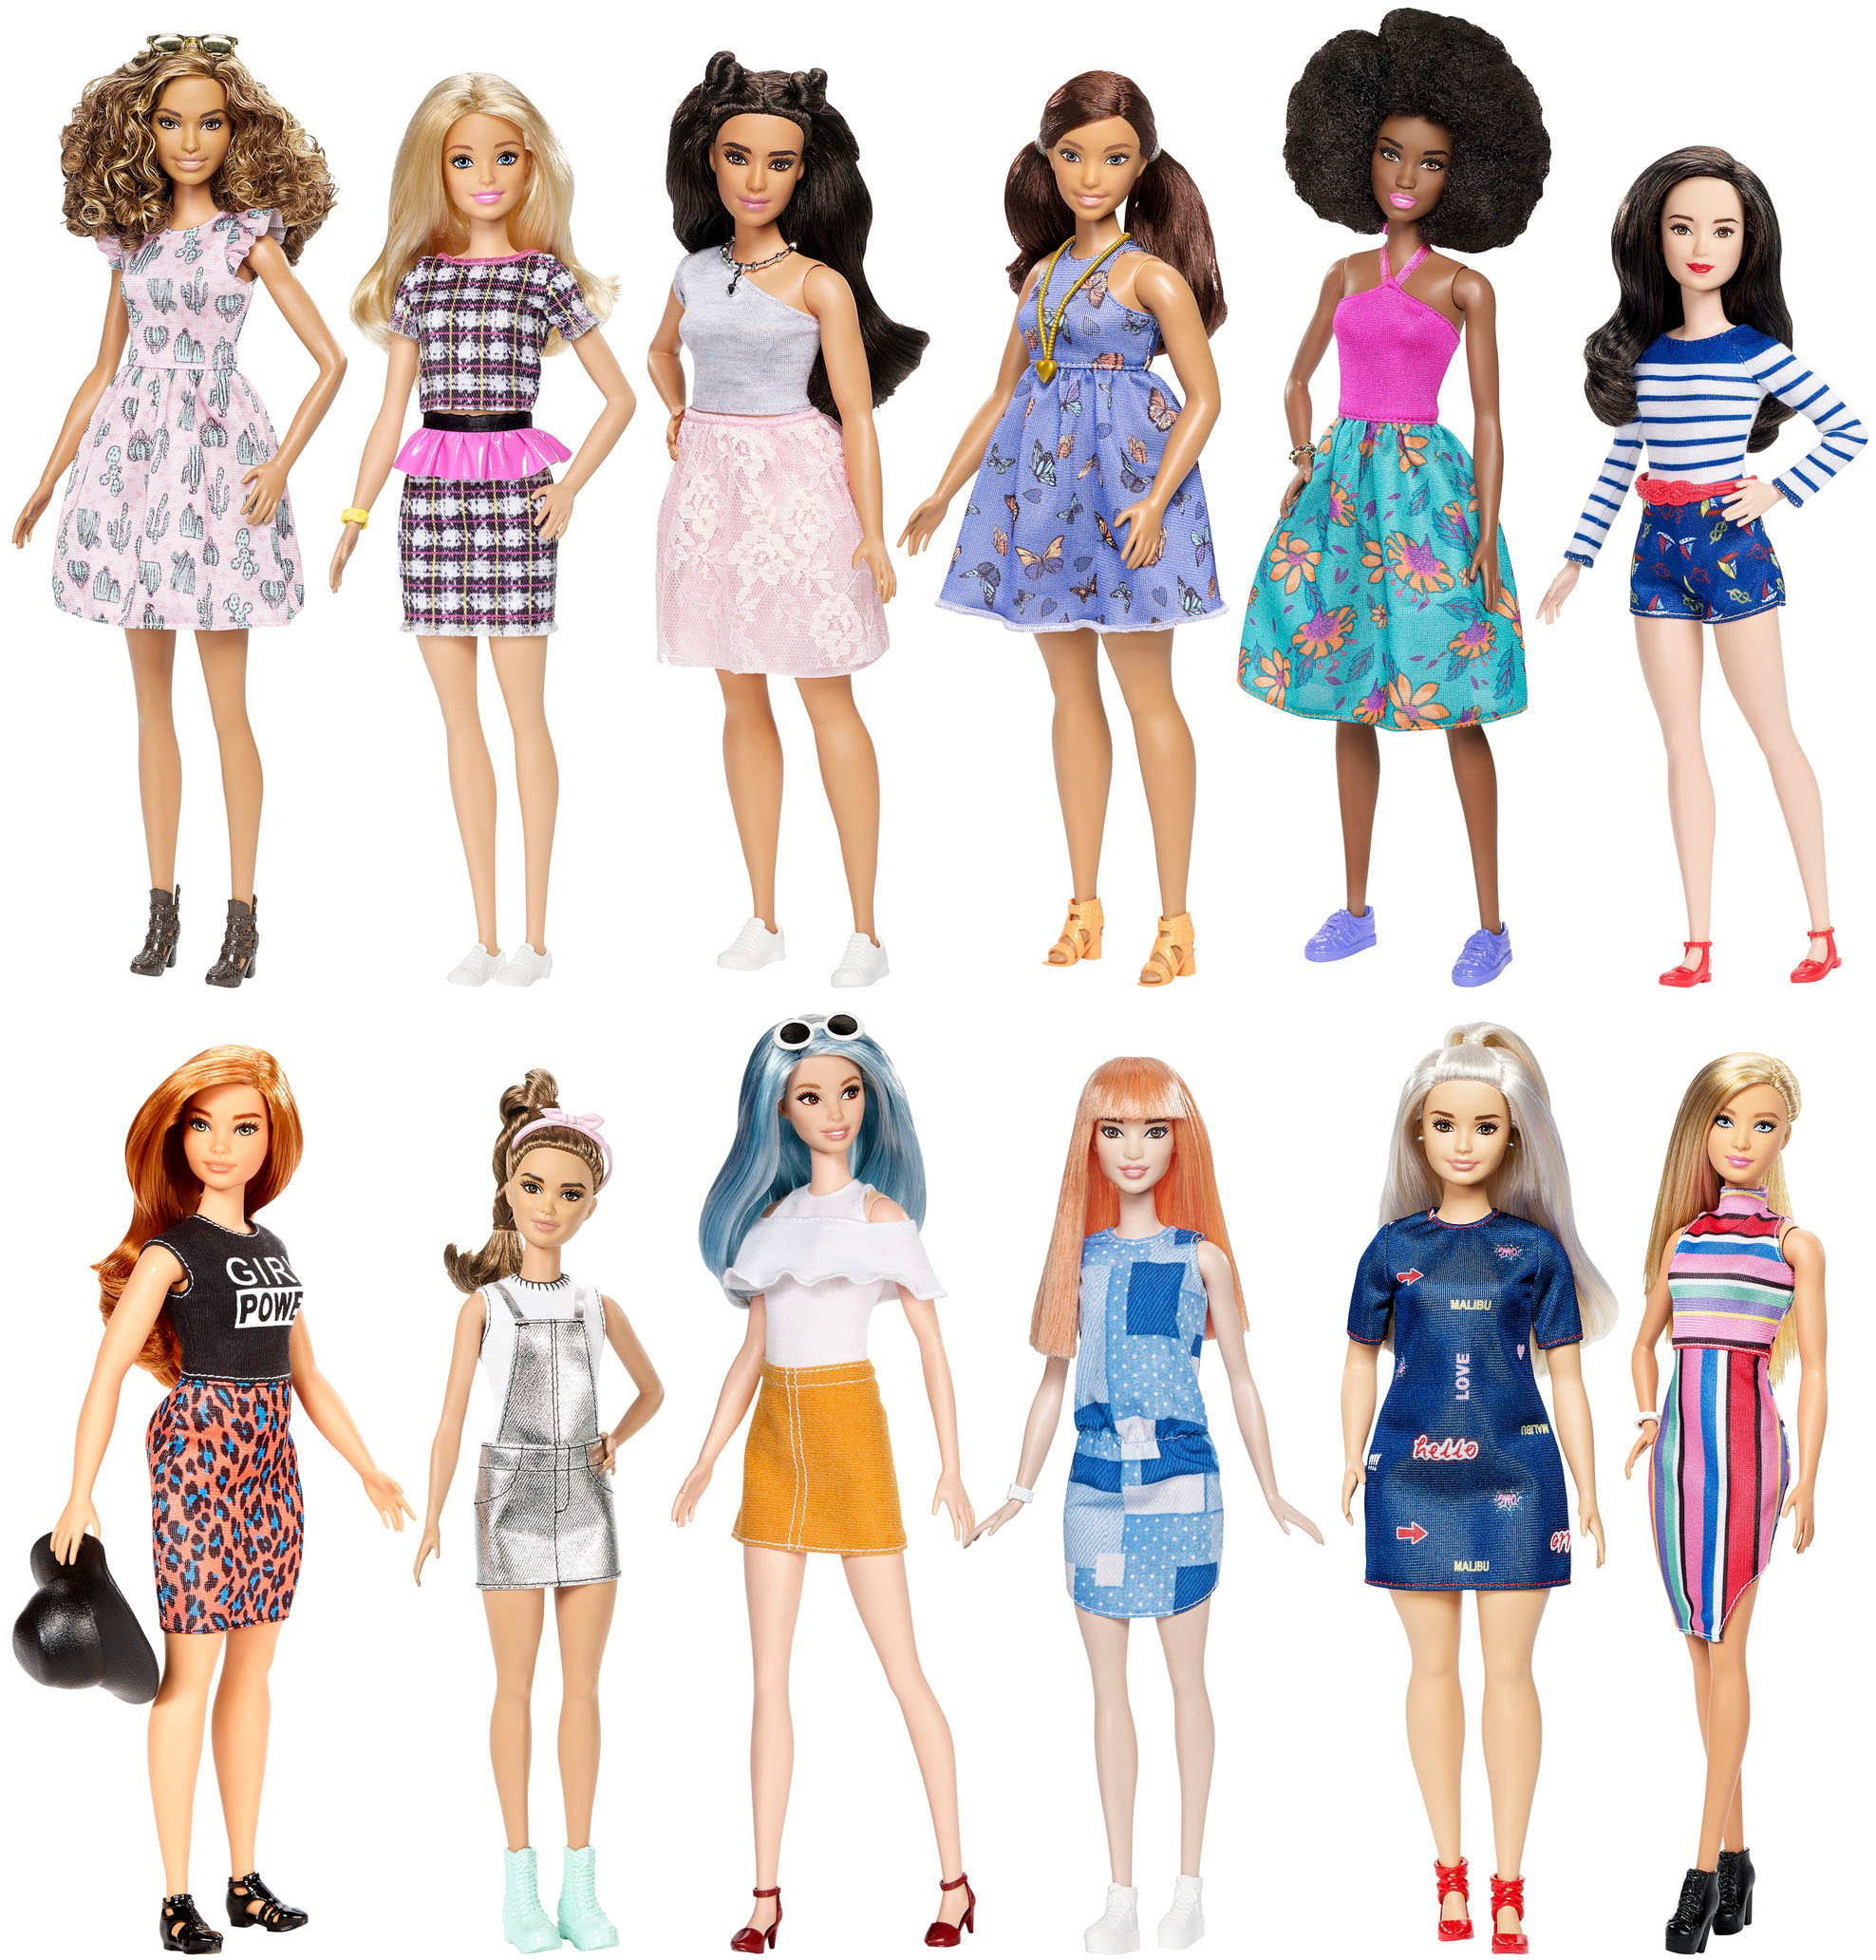 Mompelen raket Snelkoppelingen Barbie Fashionistas Doll Styles May Vary FBR37 - Best Buy